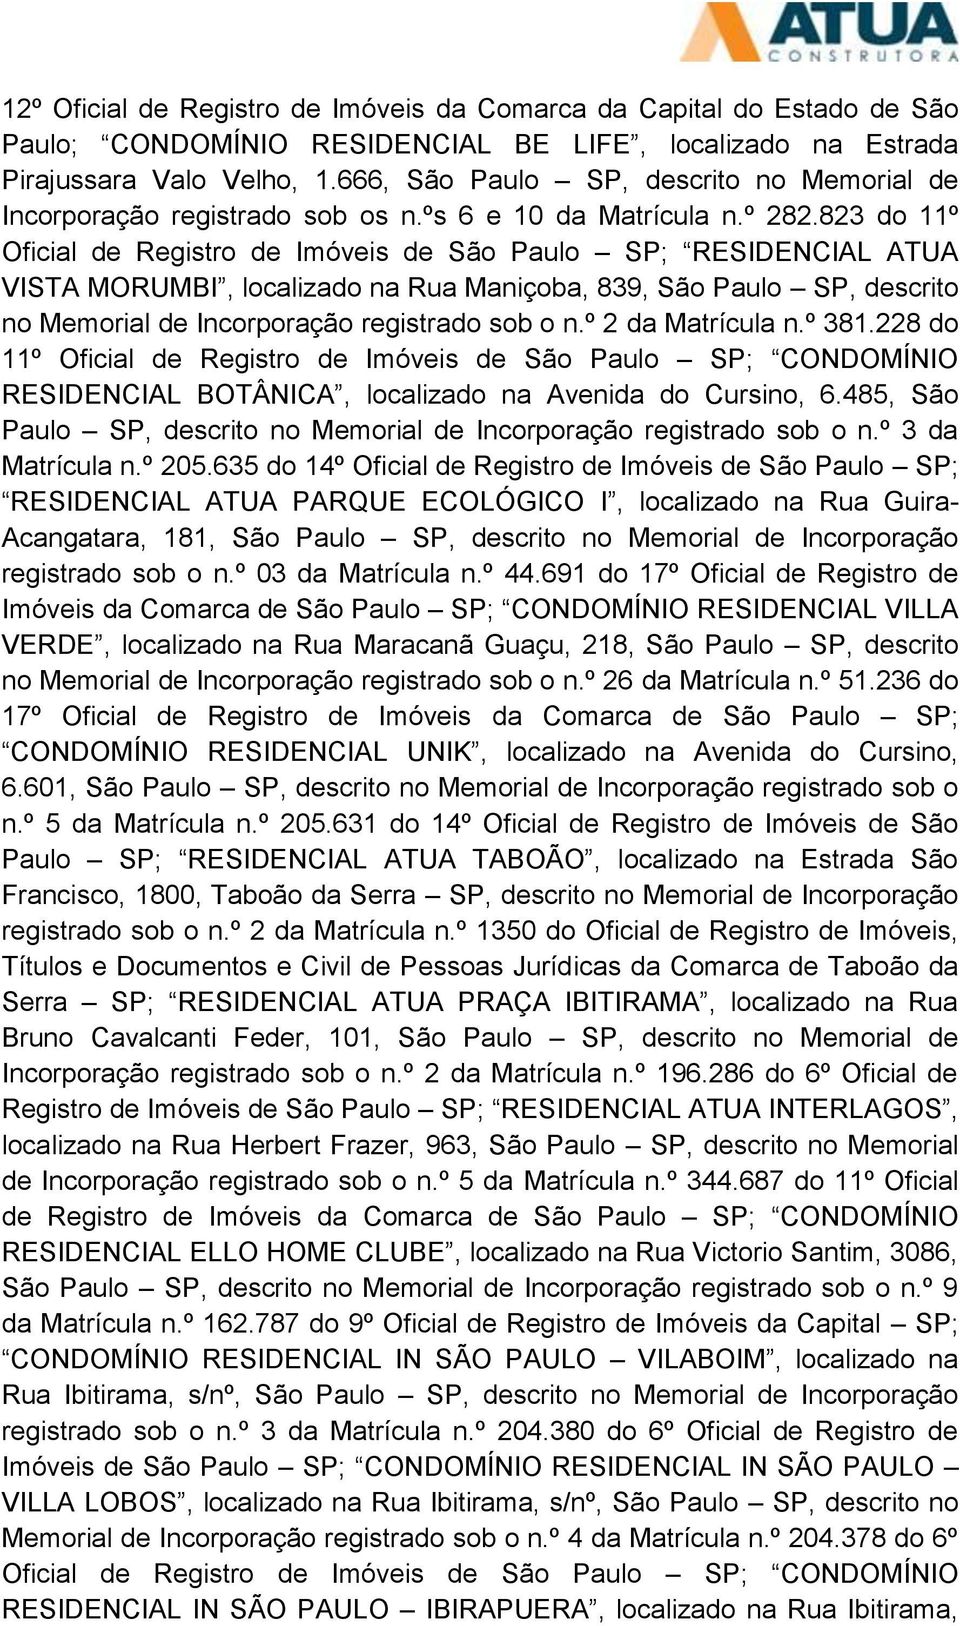 823 do 11º Oficial de Registro de Imóveis de São Paulo SP; RESIDENCIAL ATUA VISTA MORUMBI, localizado na Rua Maniçoba, 839, São Paulo SP, descrito no Memorial de Incorporação registrado sob o n.